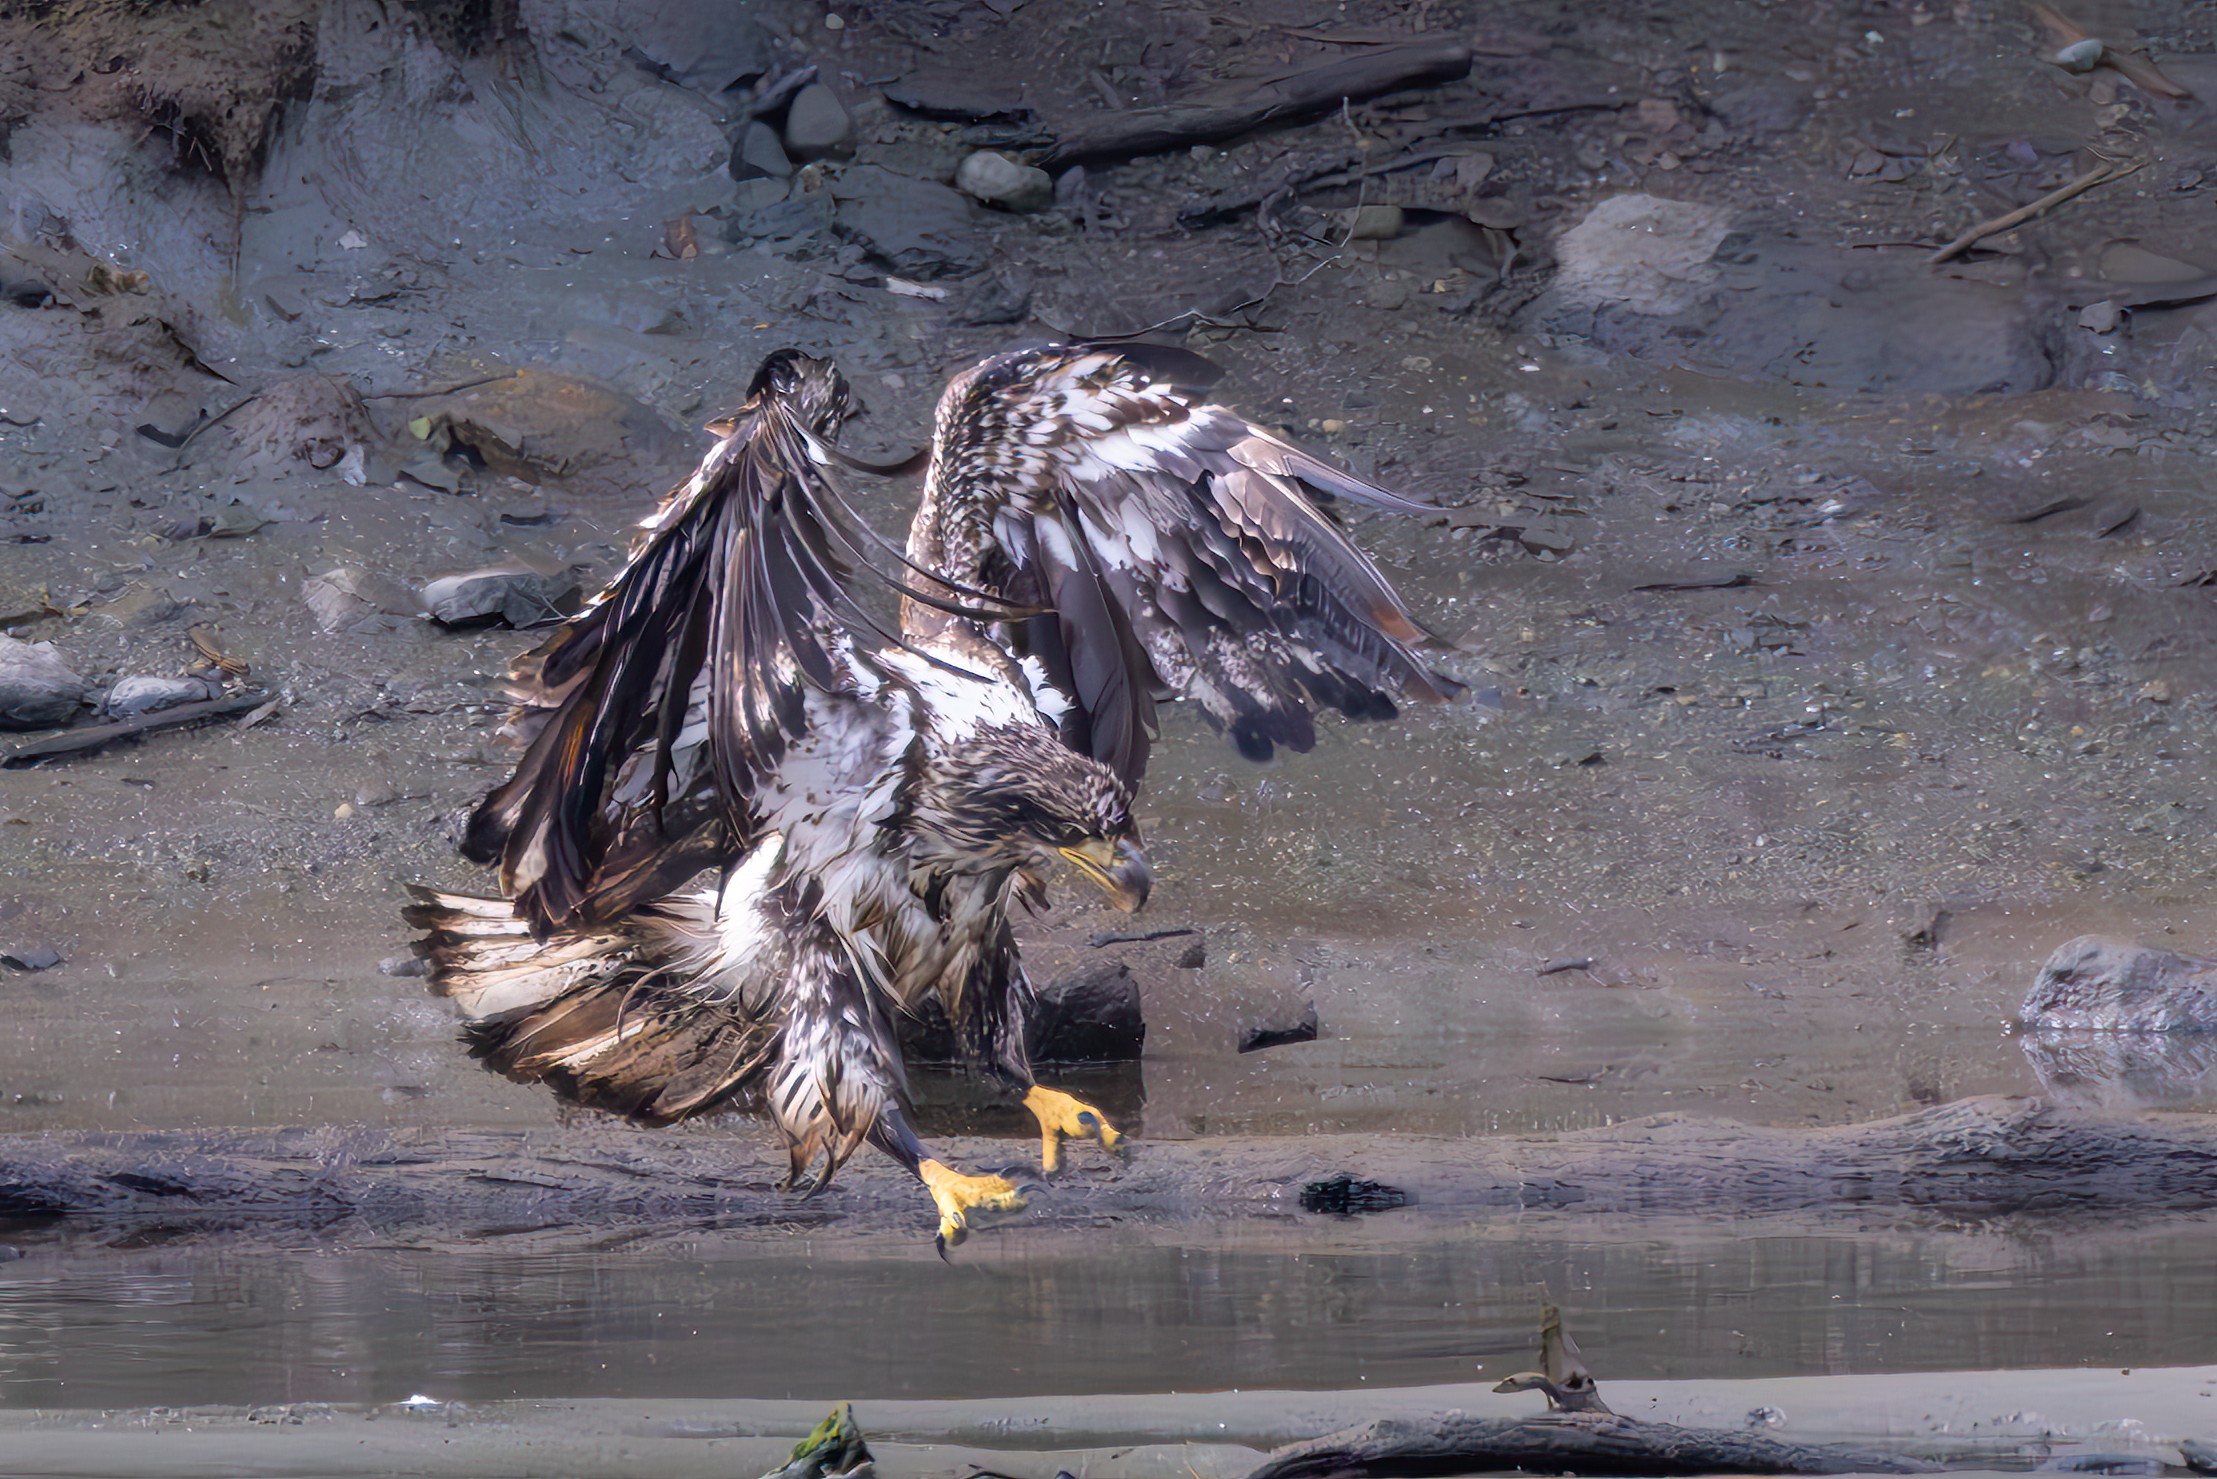 Wet eagle landing making a landing